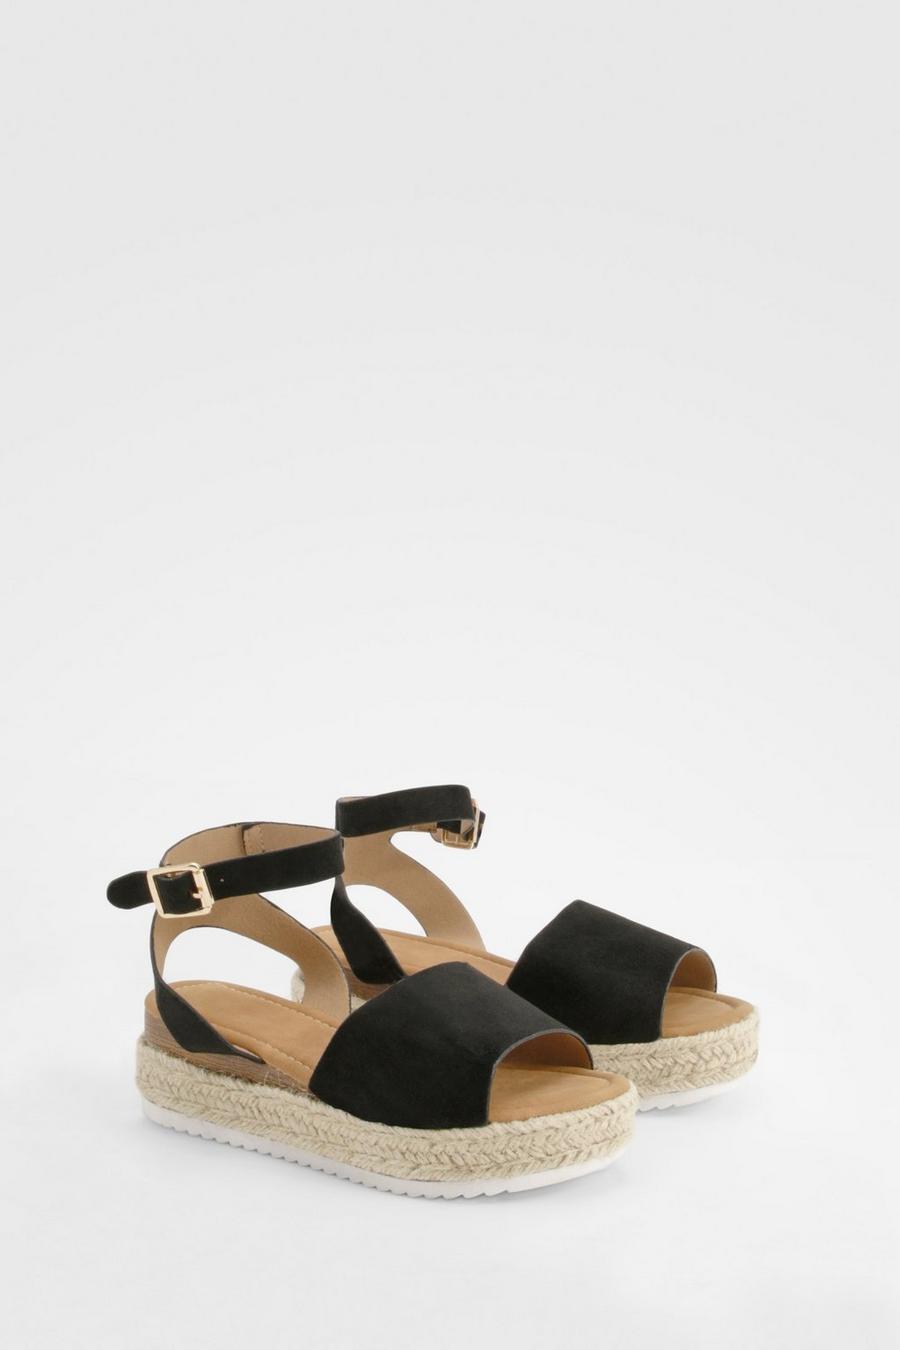 Black Peep Toe Espadrille Flatform Sandals